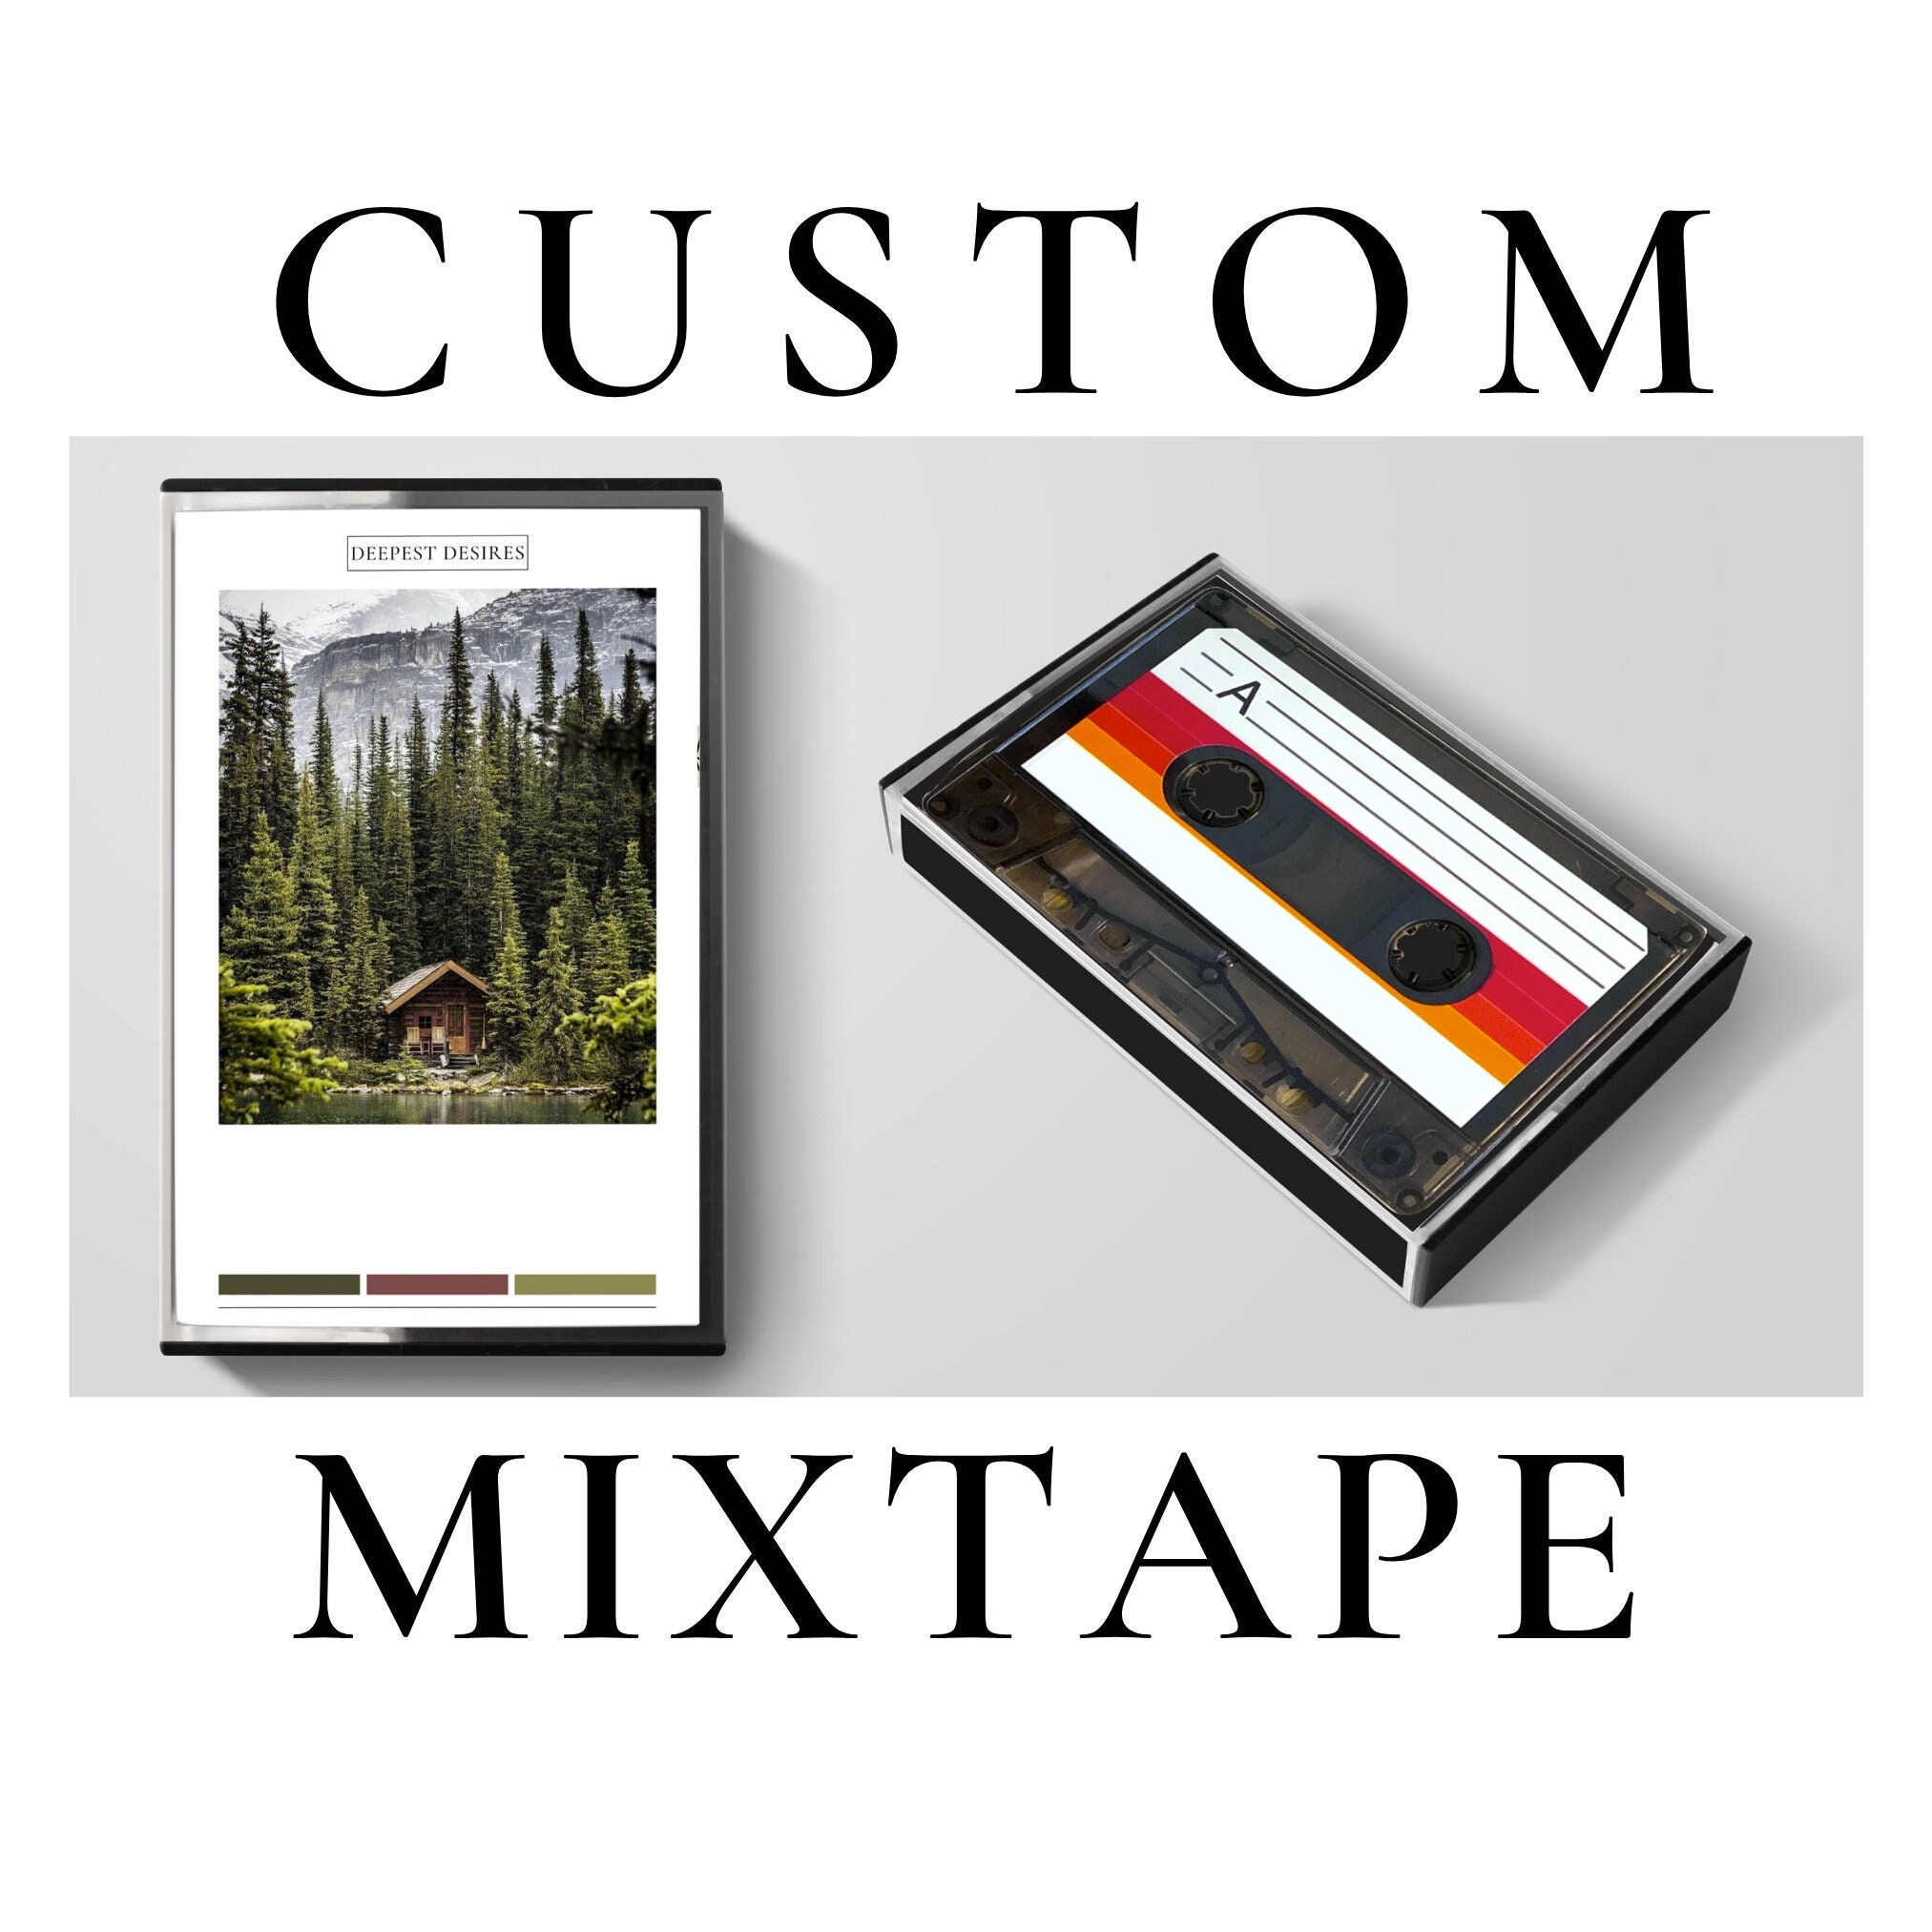 Custom mixtape cover for sale  